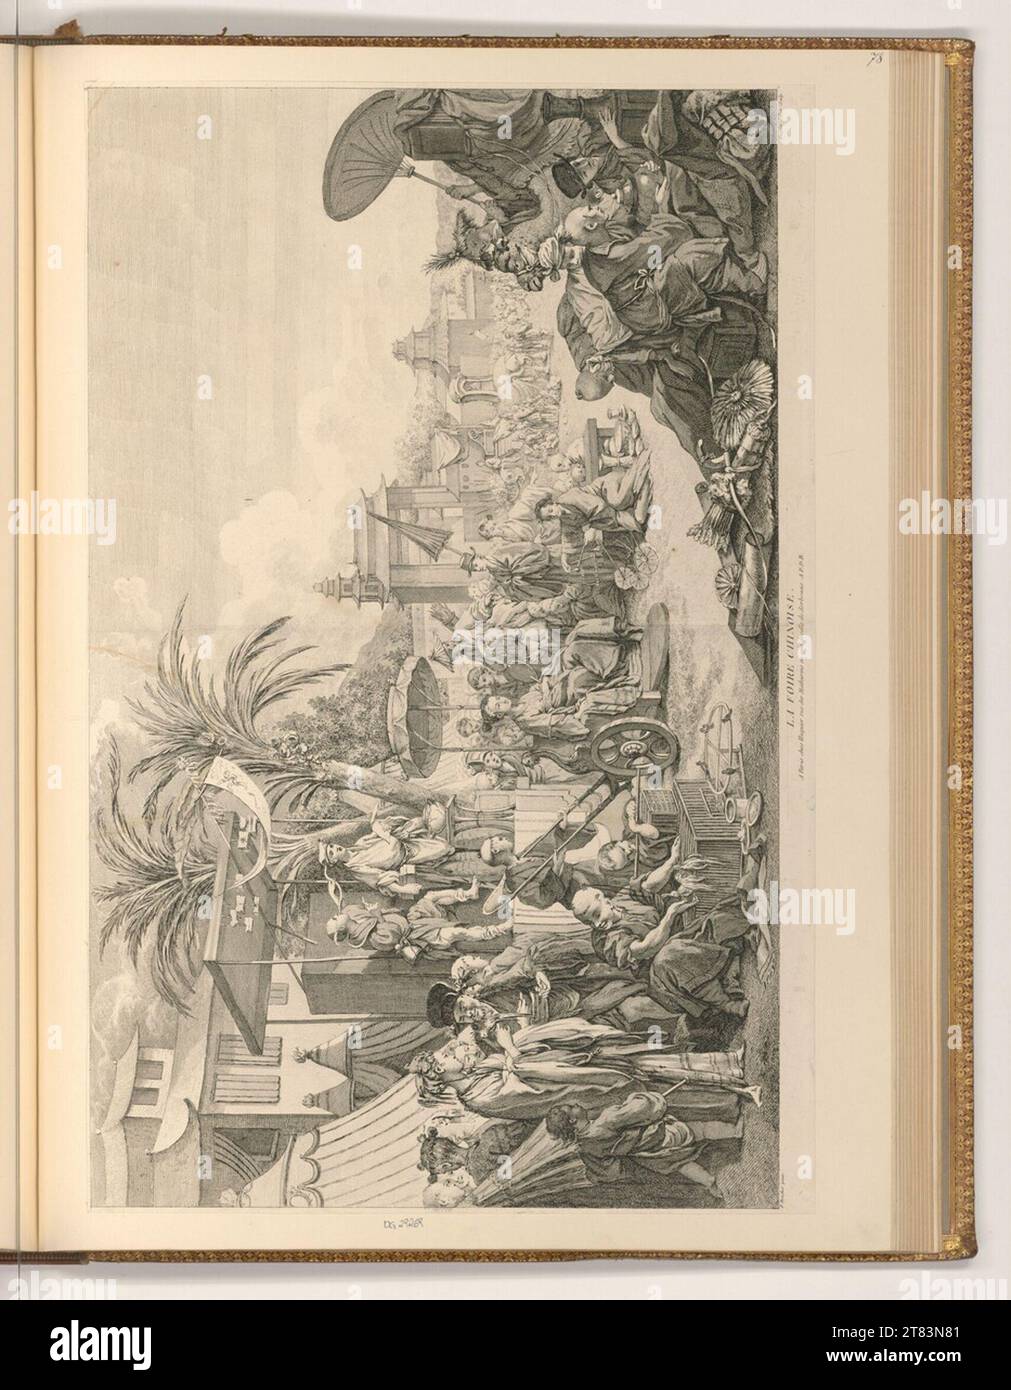 Jacques Gabriel Huquier (graveur) la foire chinoise. gravure 1750-1805, 1750/1805 Banque D'Images